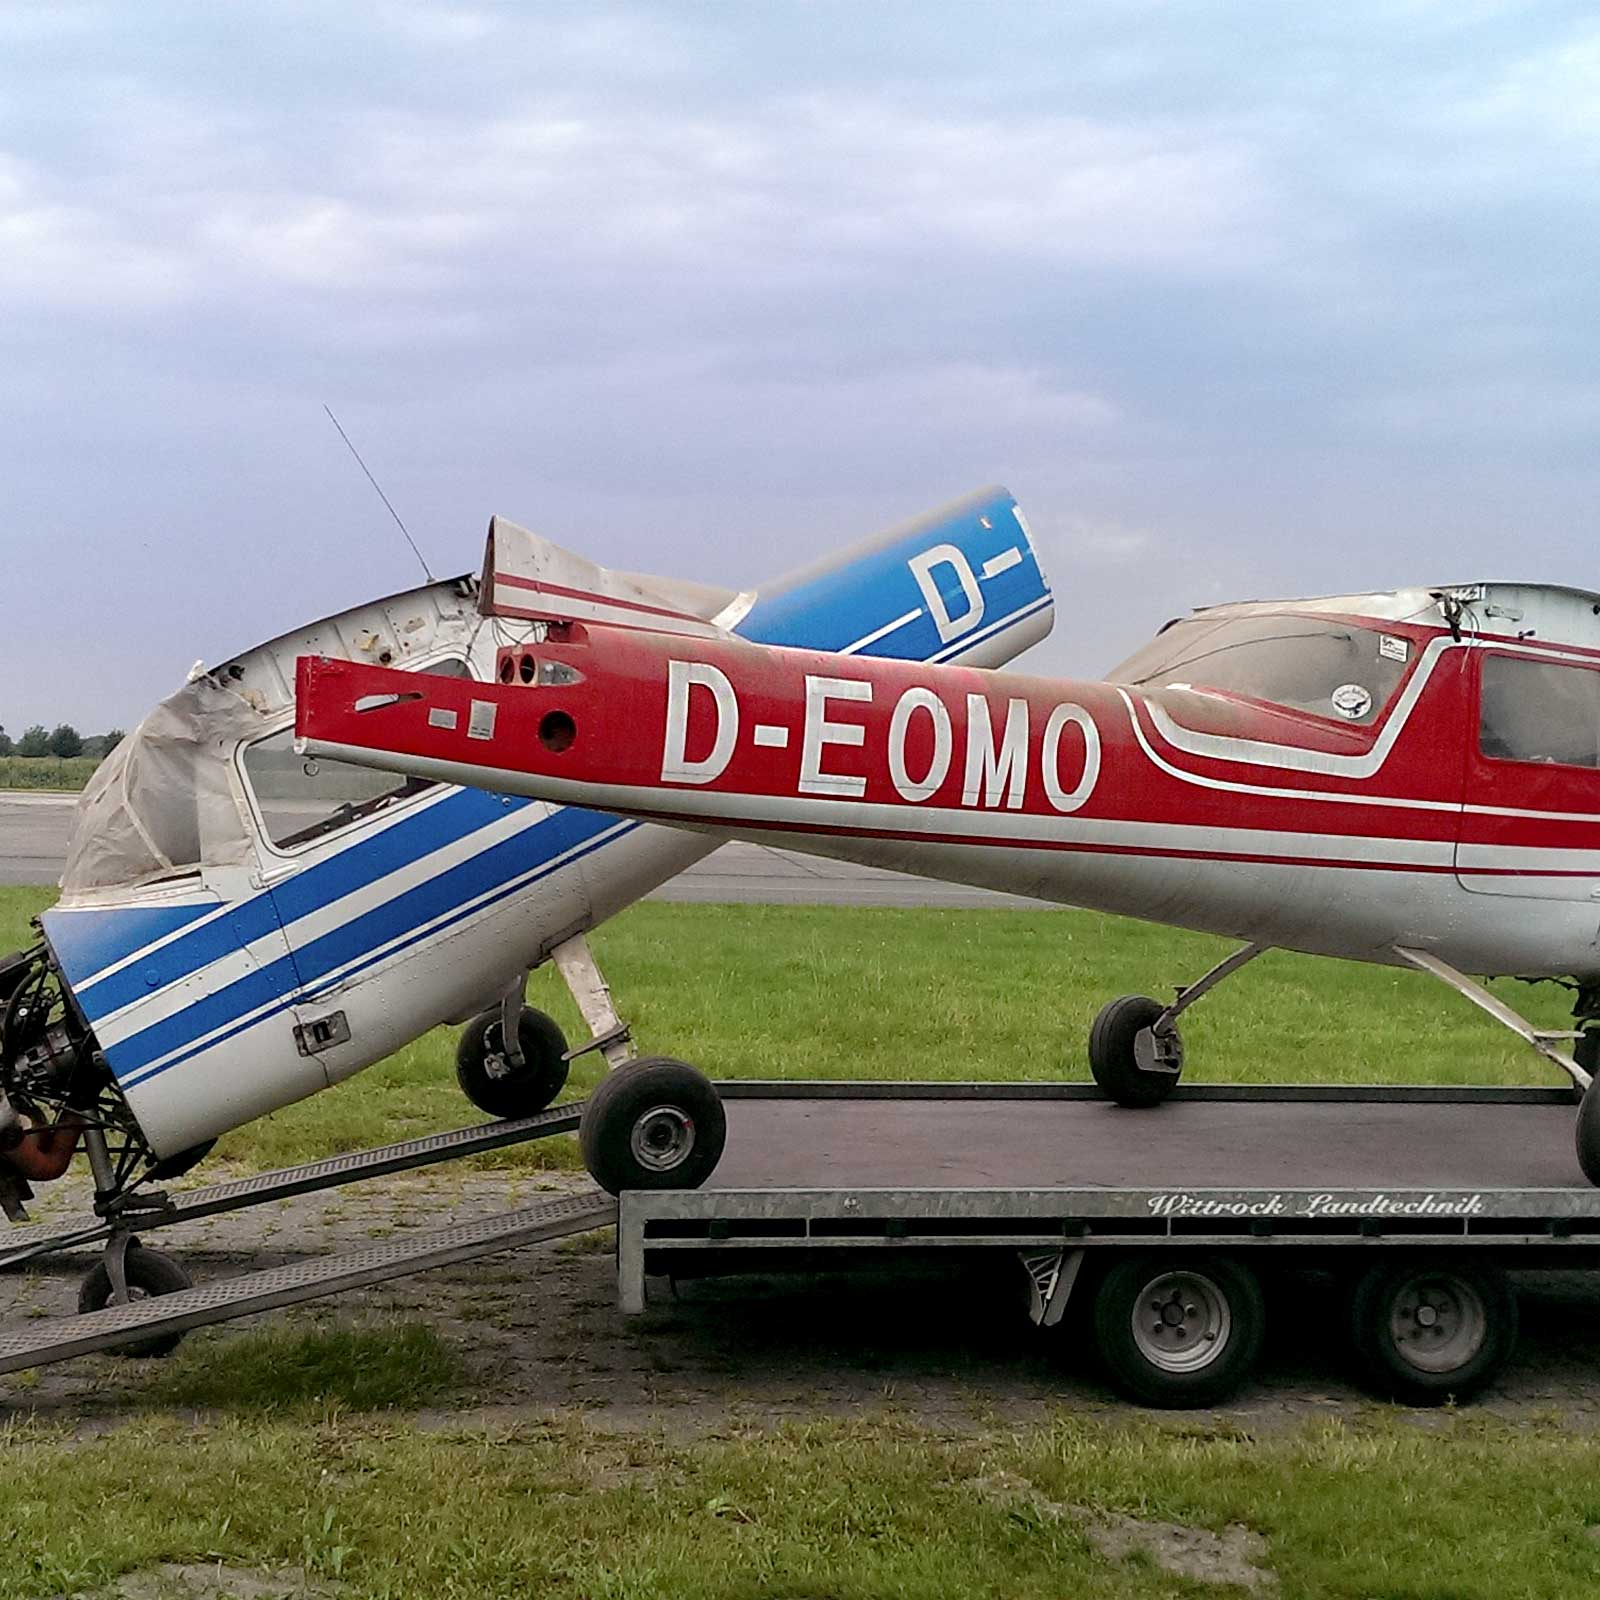 Aviationtag Cessna 150 - D-EOMO